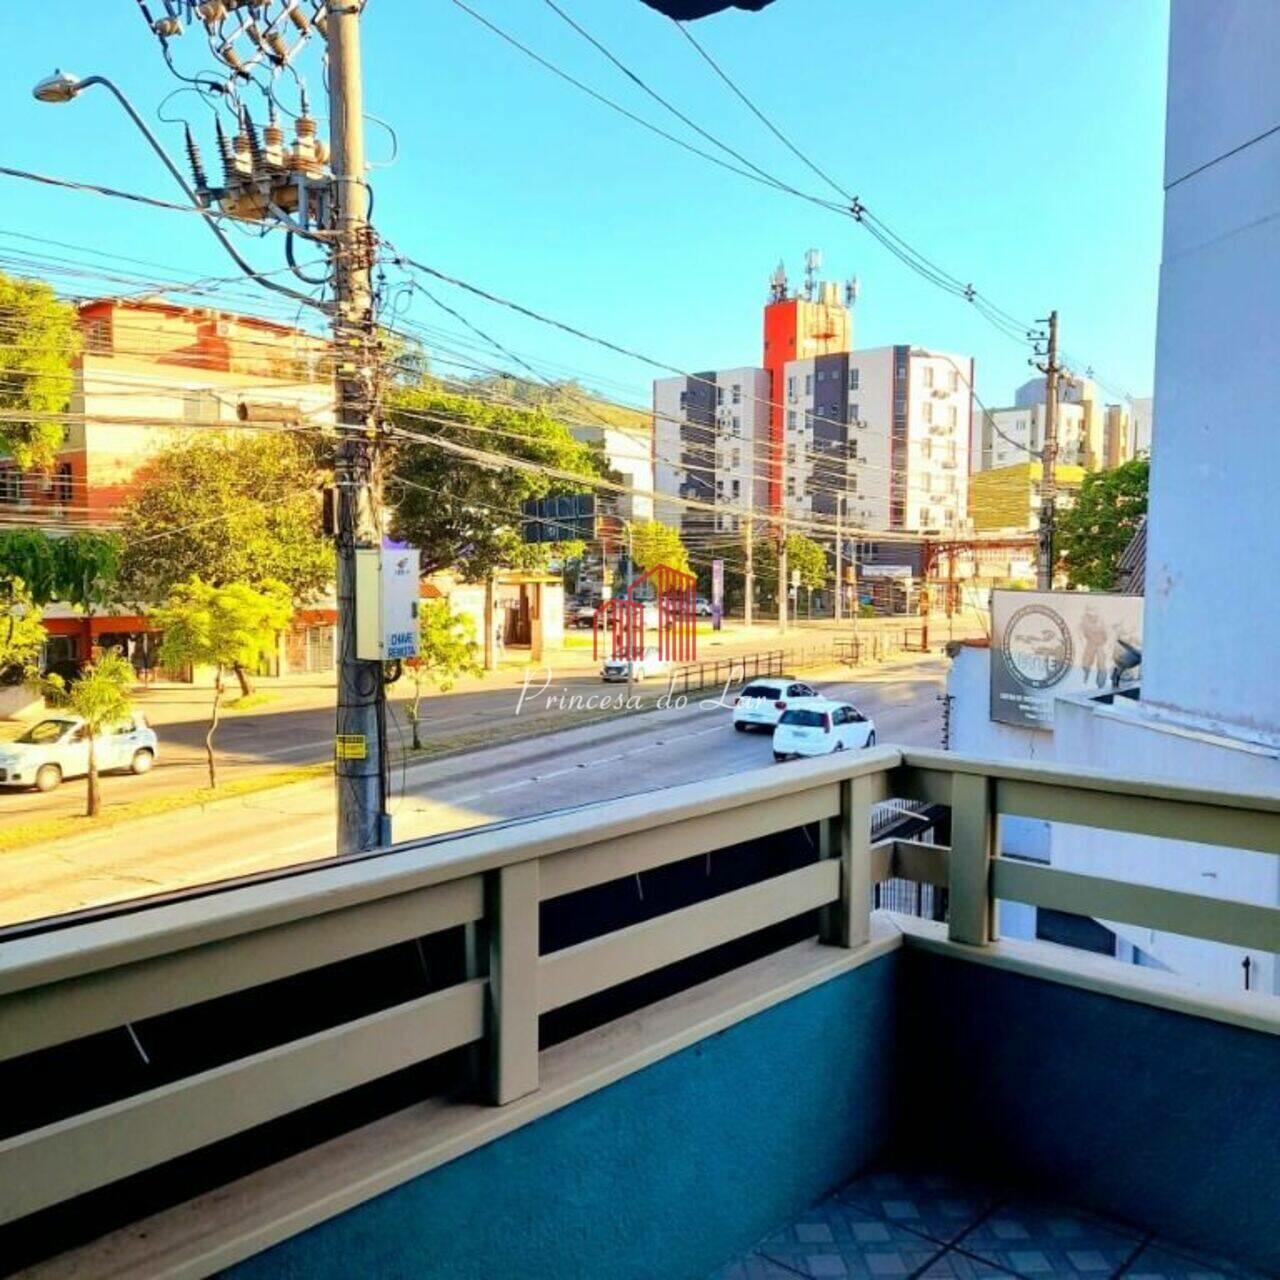 Loja Teresópolis, Porto Alegre - RS